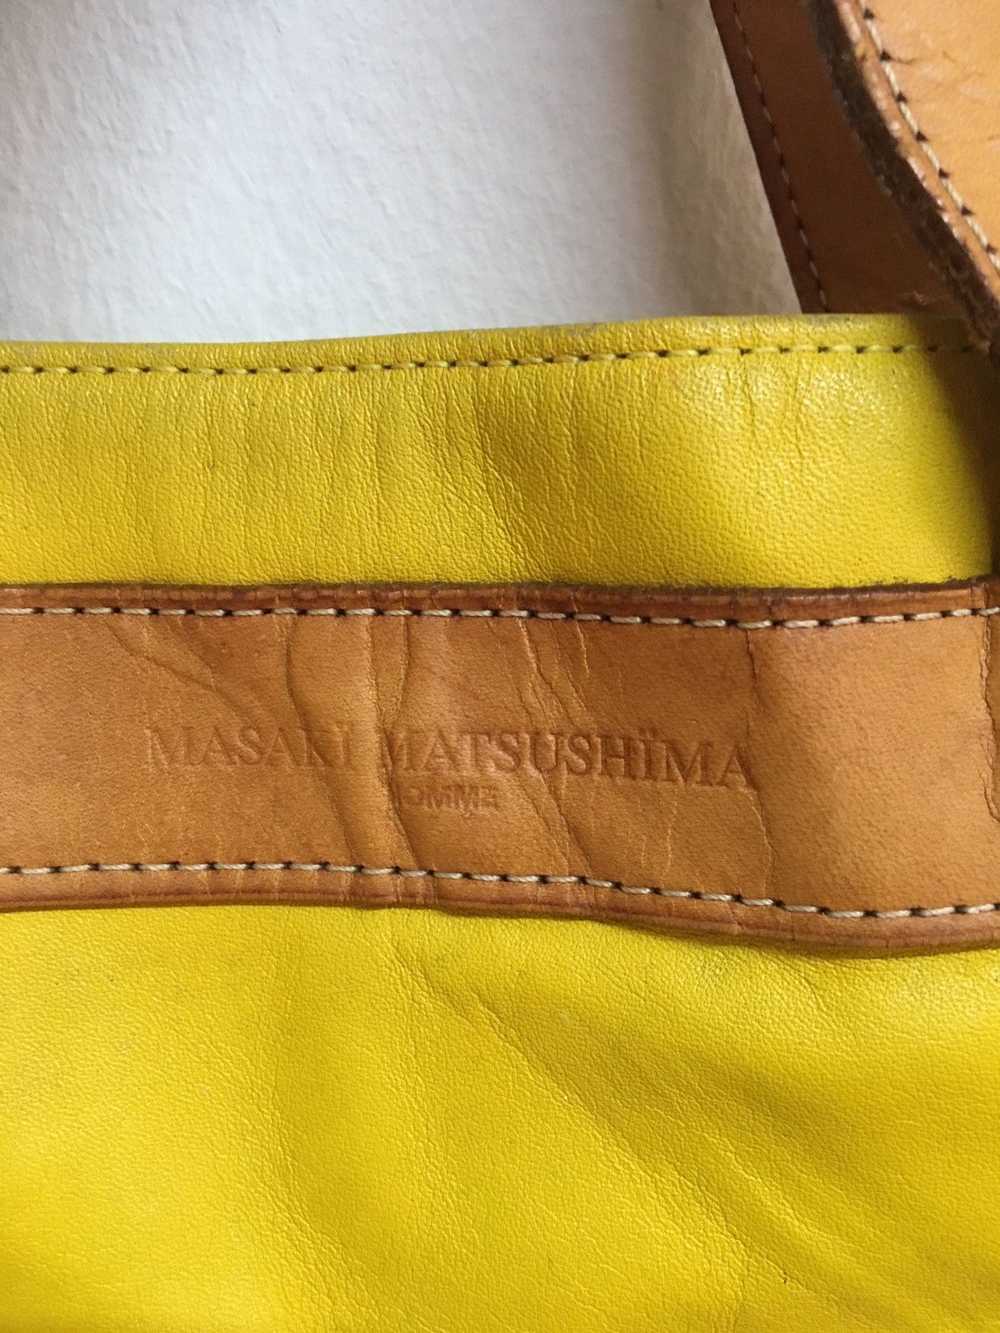 Bag × Japanese Brand × Masaki Matsushima leather … - image 2